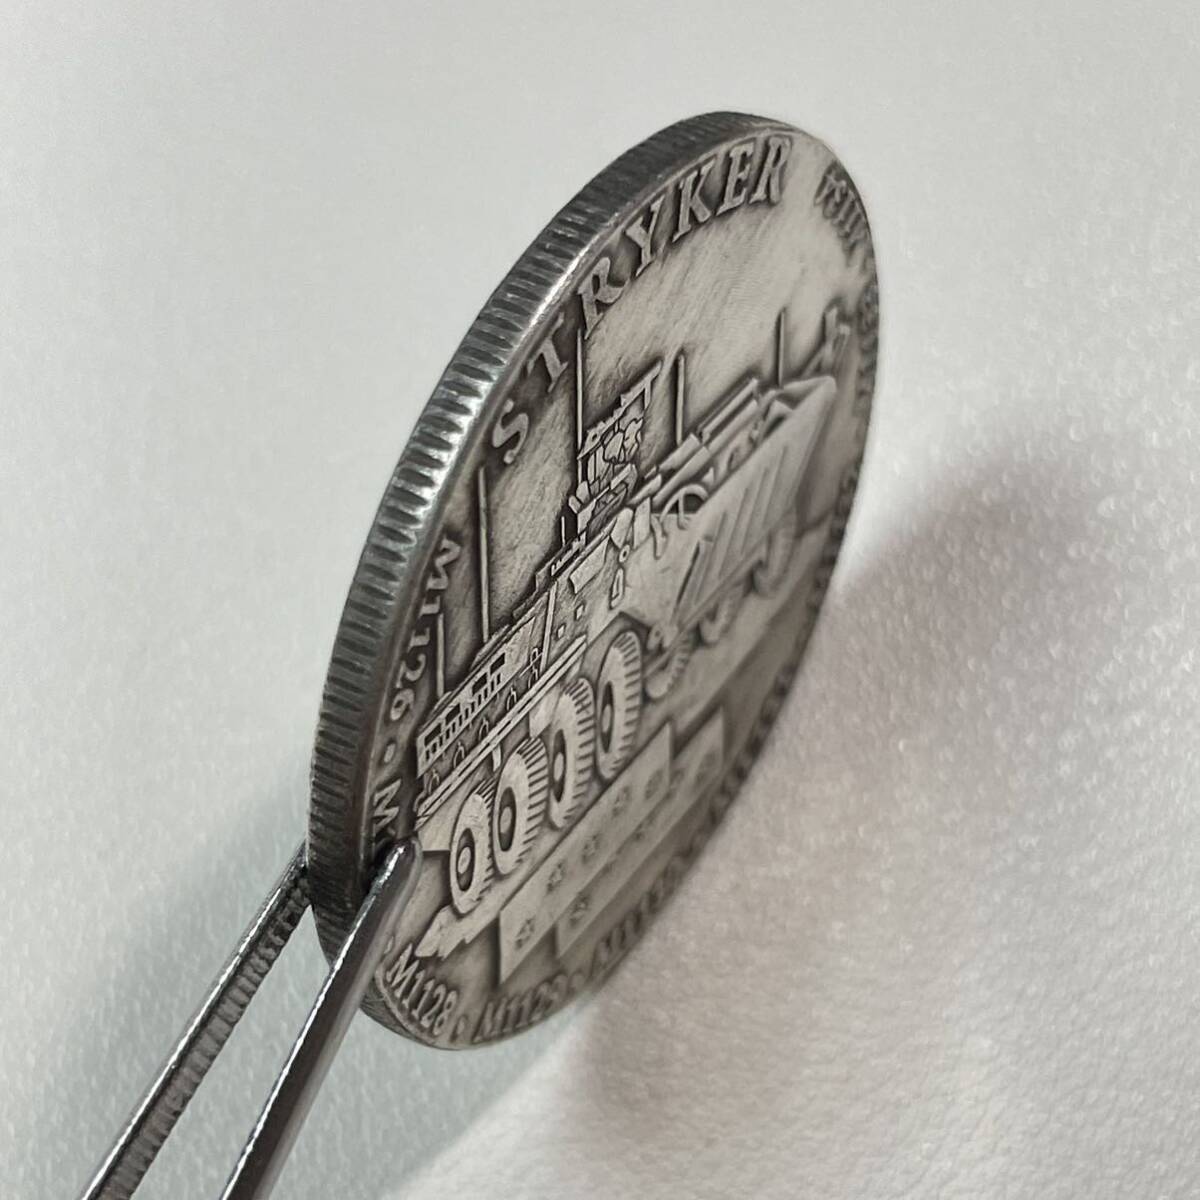 アメリカ 硬貨 古銭 ホーボーニッケルコイン ストライカーシリーズ 偵察戦闘車 記念幣 コレクション コイン 重20.34g 銀貨の画像4